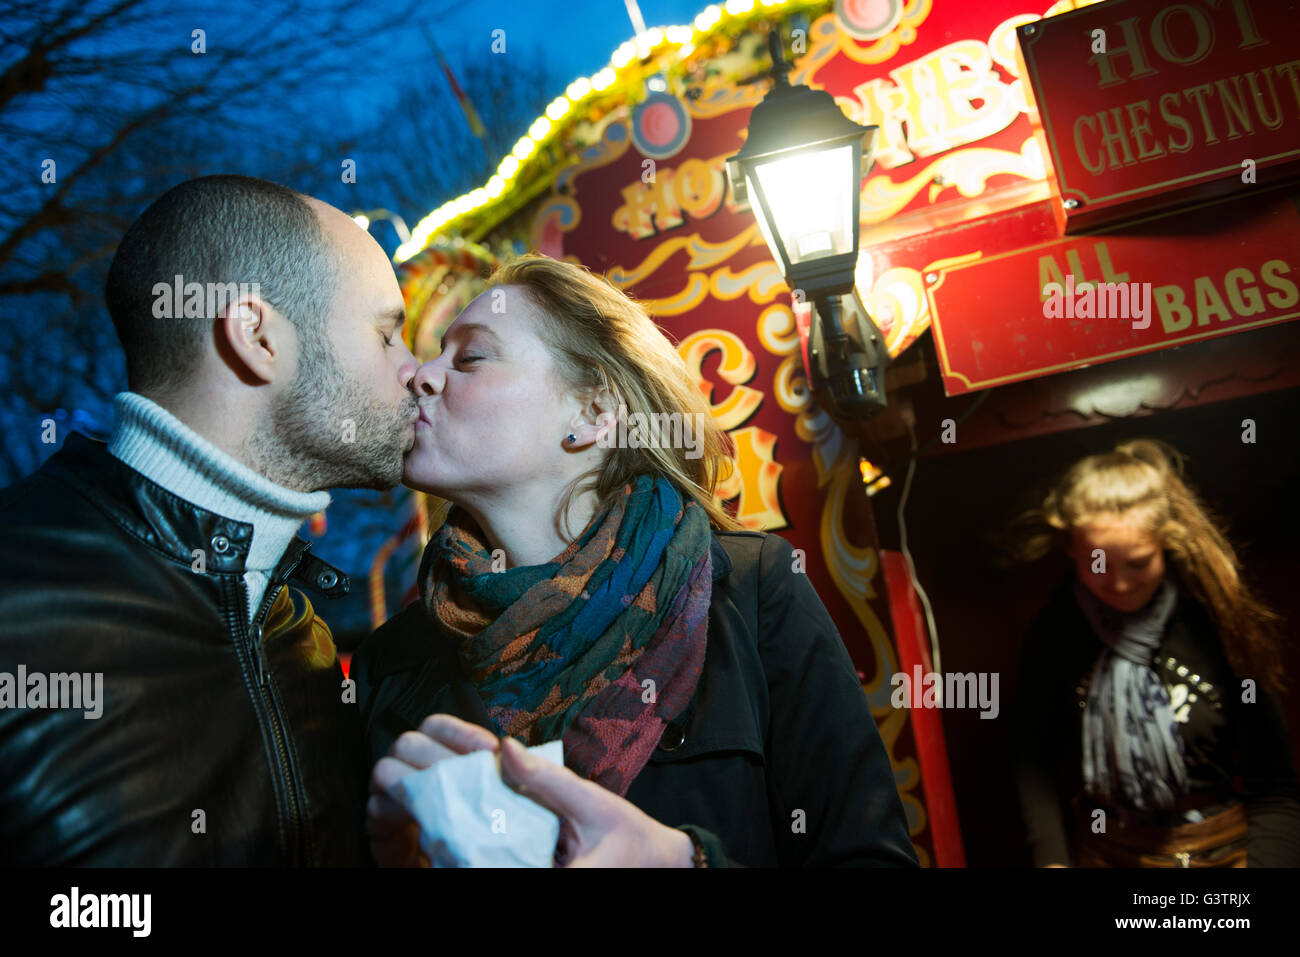 Un couple s'embrasser devant un vendeur vente de marrons chauds sur la rive sud de Londres la nuit. Banque D'Images